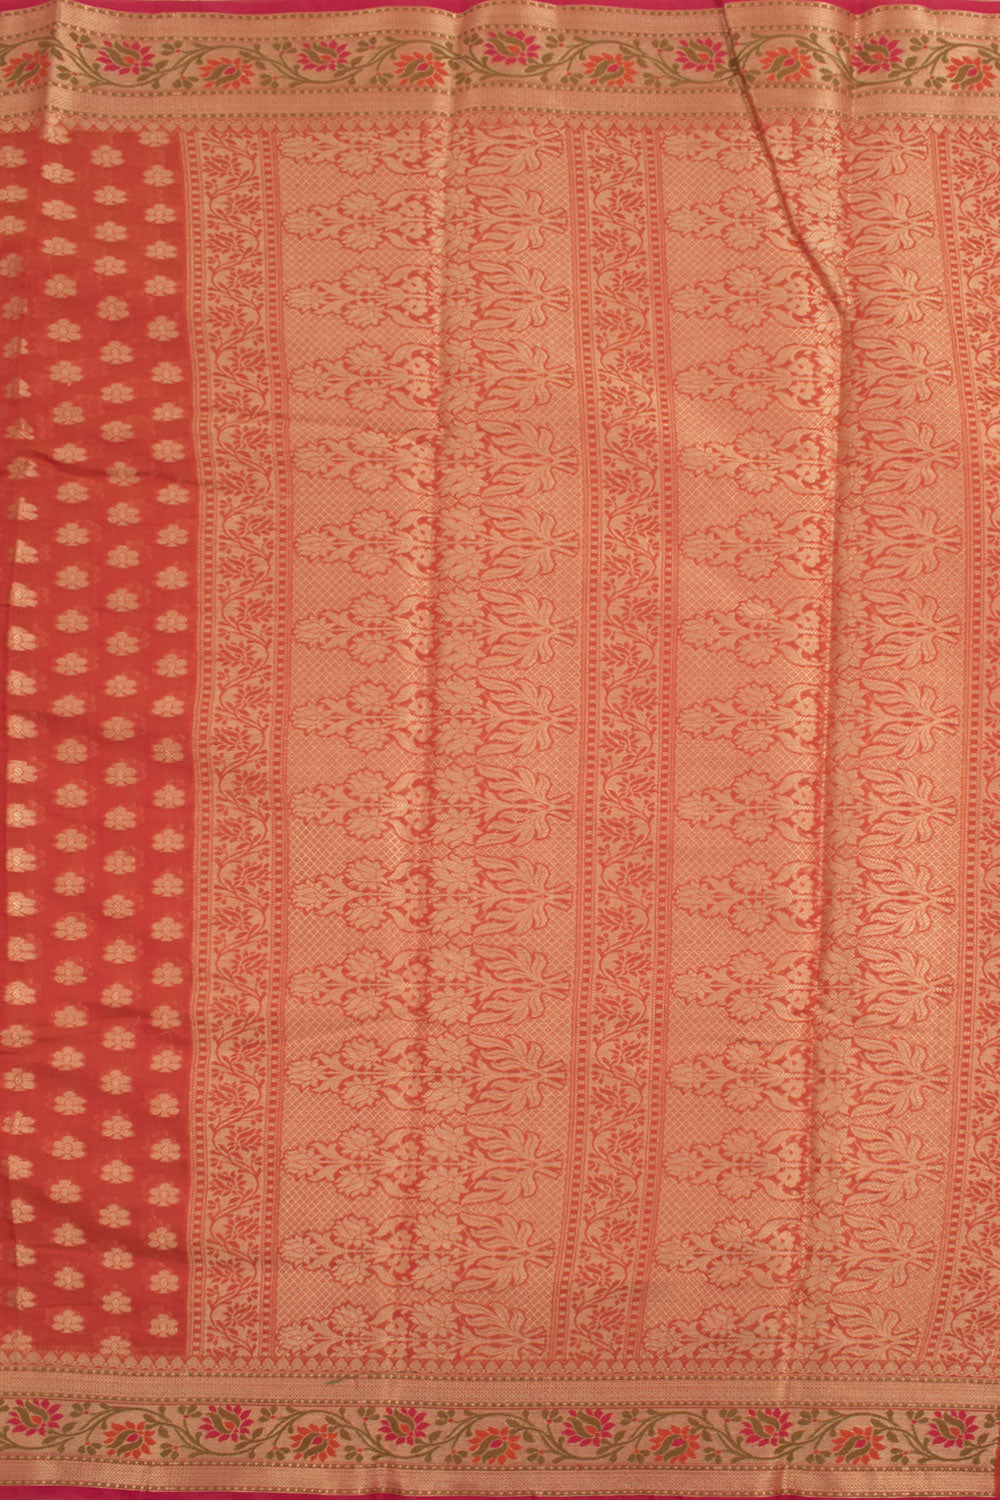 Banarasi Cotton Saree 10058875